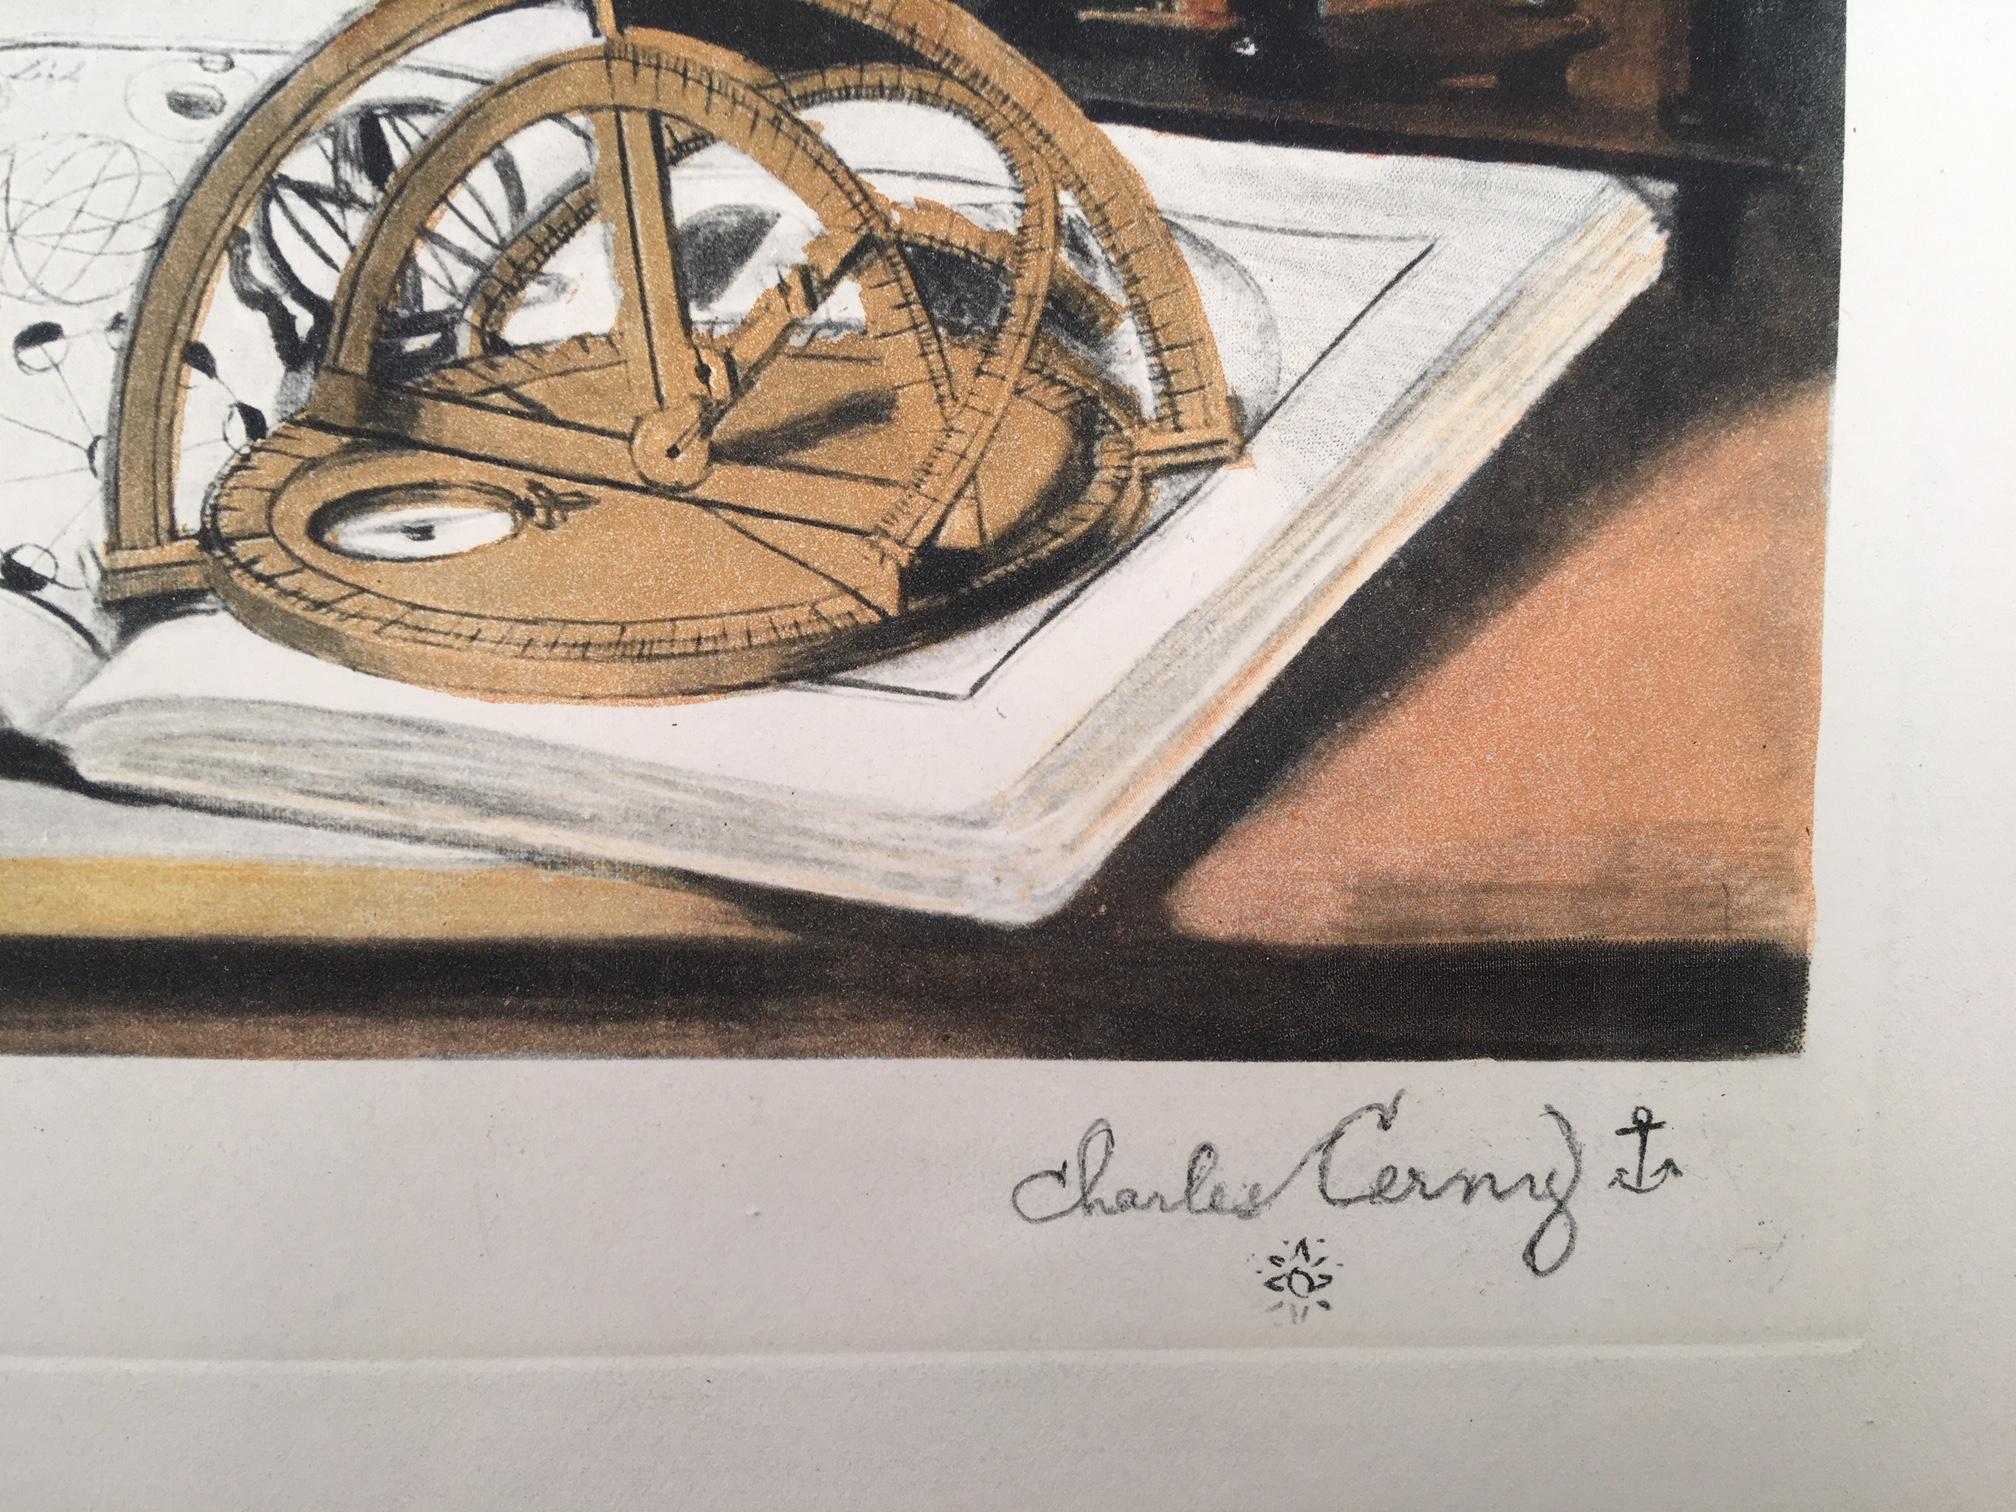 Navigation - Print by Charles Cerny